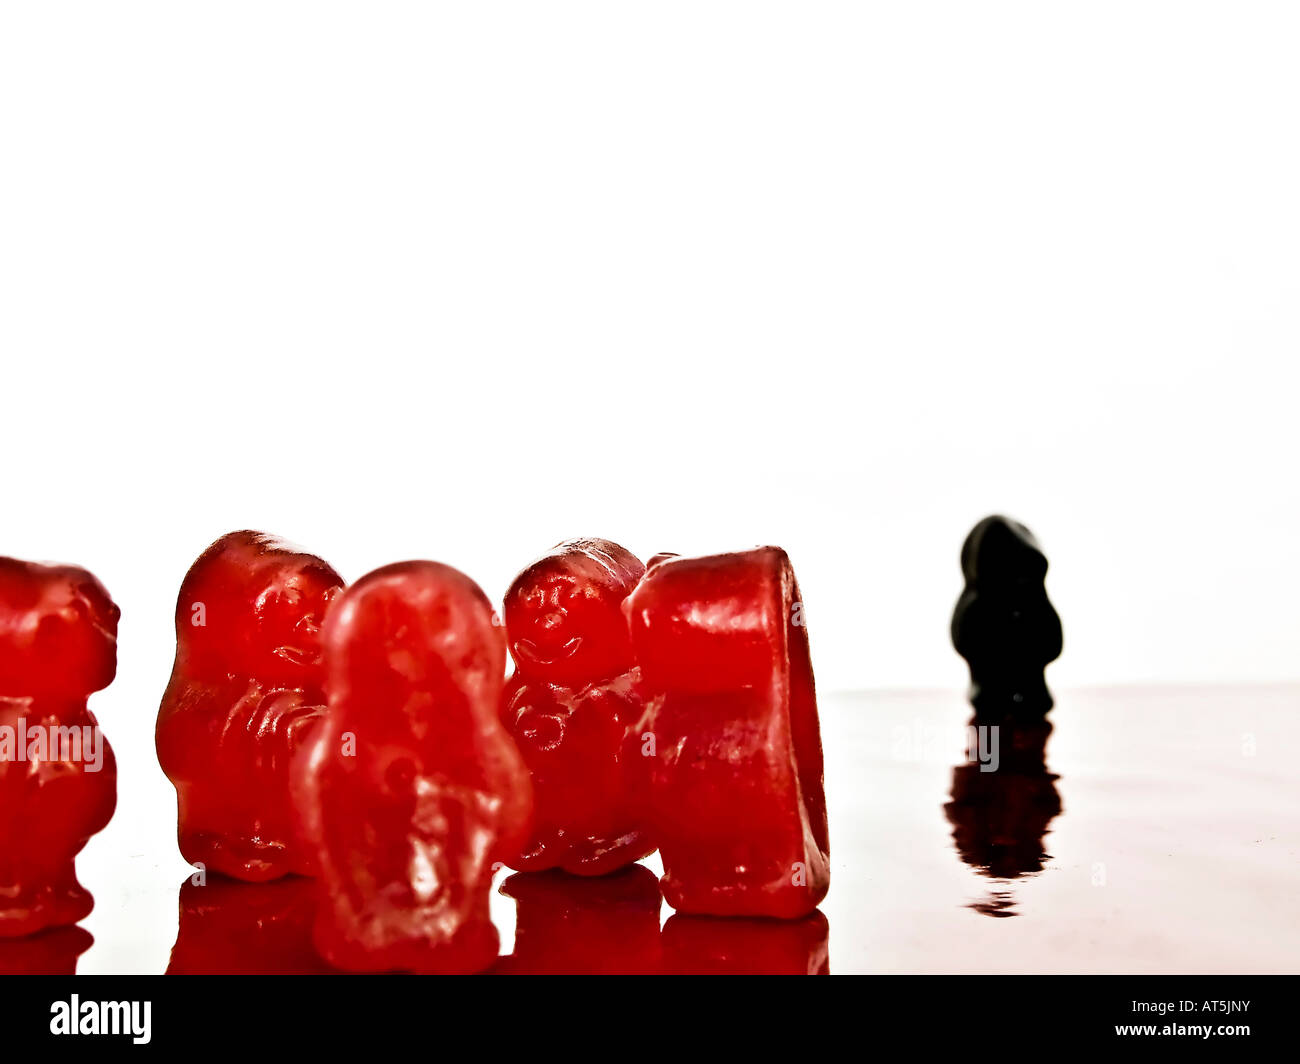 Groupe de gélatine rouge avec noir isolé toumoux illustrant la discrimination Banque D'Images